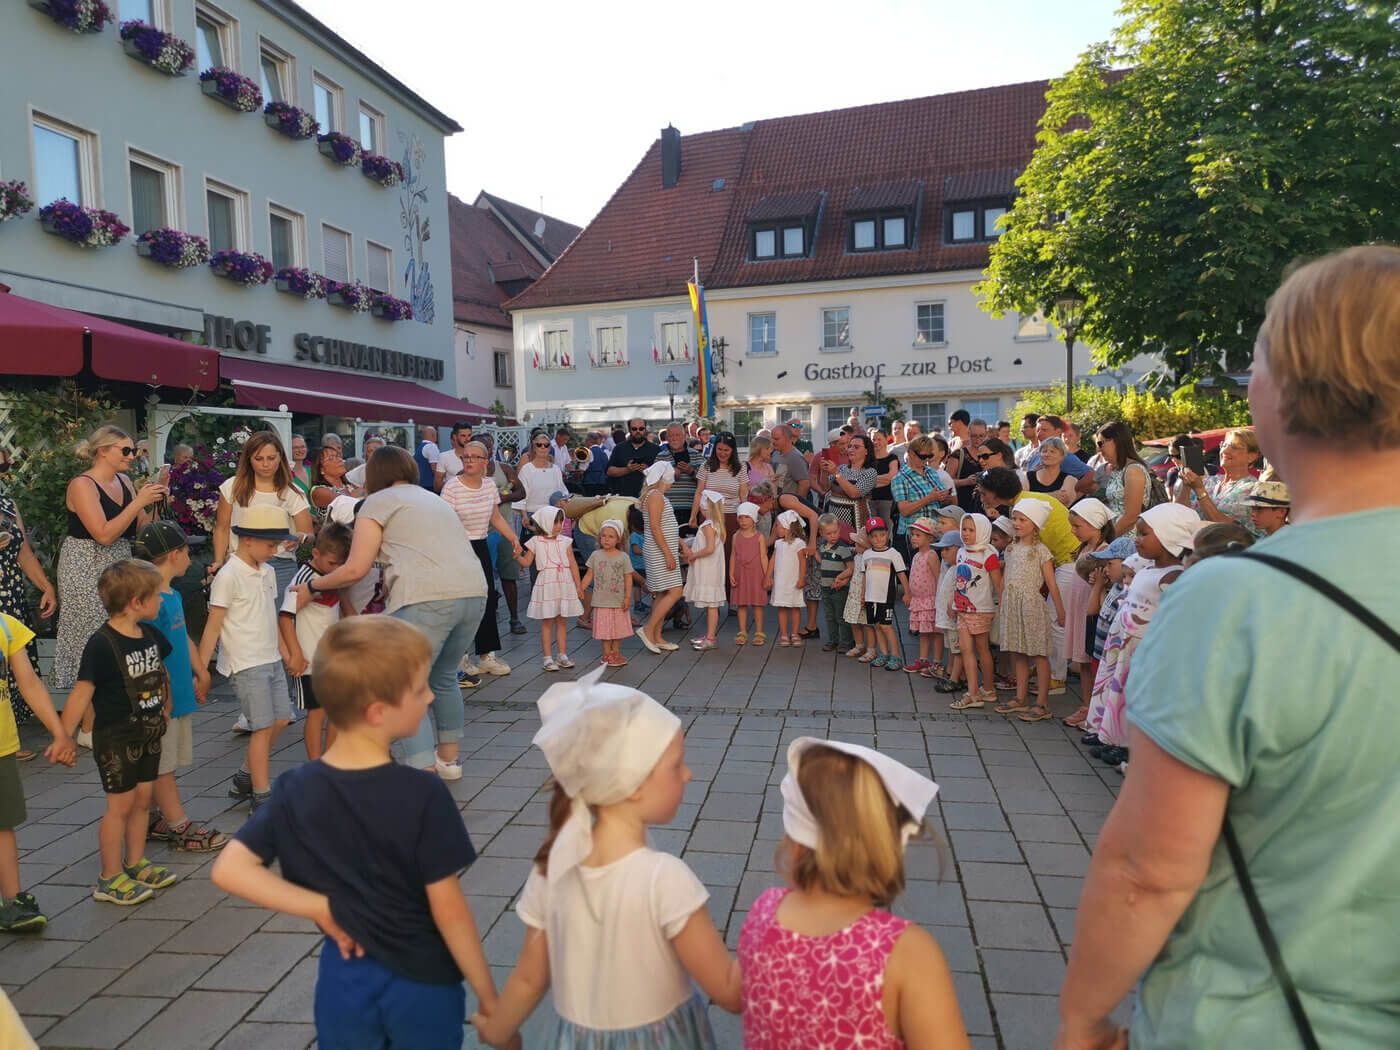 Zapfenstreich Ebermannstadt - Kinder mit weißen Hauben Zapfenstreich Ebermannstadt - Kinder mit weißen Hauben